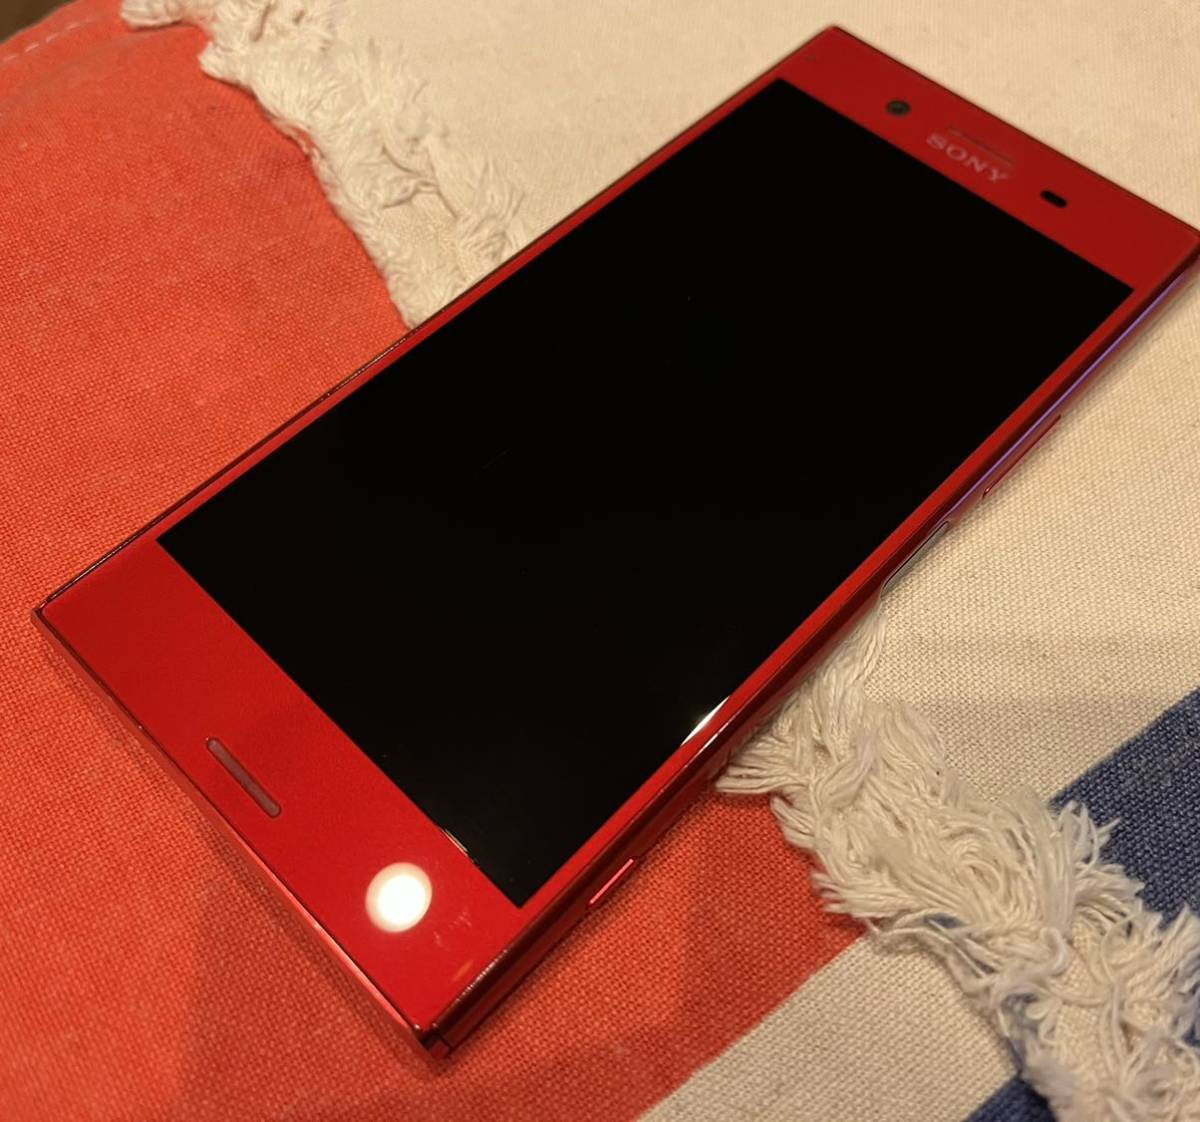 未使用品 Sony Xperia Xz Premium So 04j Rosso 4gb 64gb Android9 ロッソ エクスペリア 中古 Ntt ドコモ Docomo 4k 5 5インチ ソニー エリクソン Afols Pl